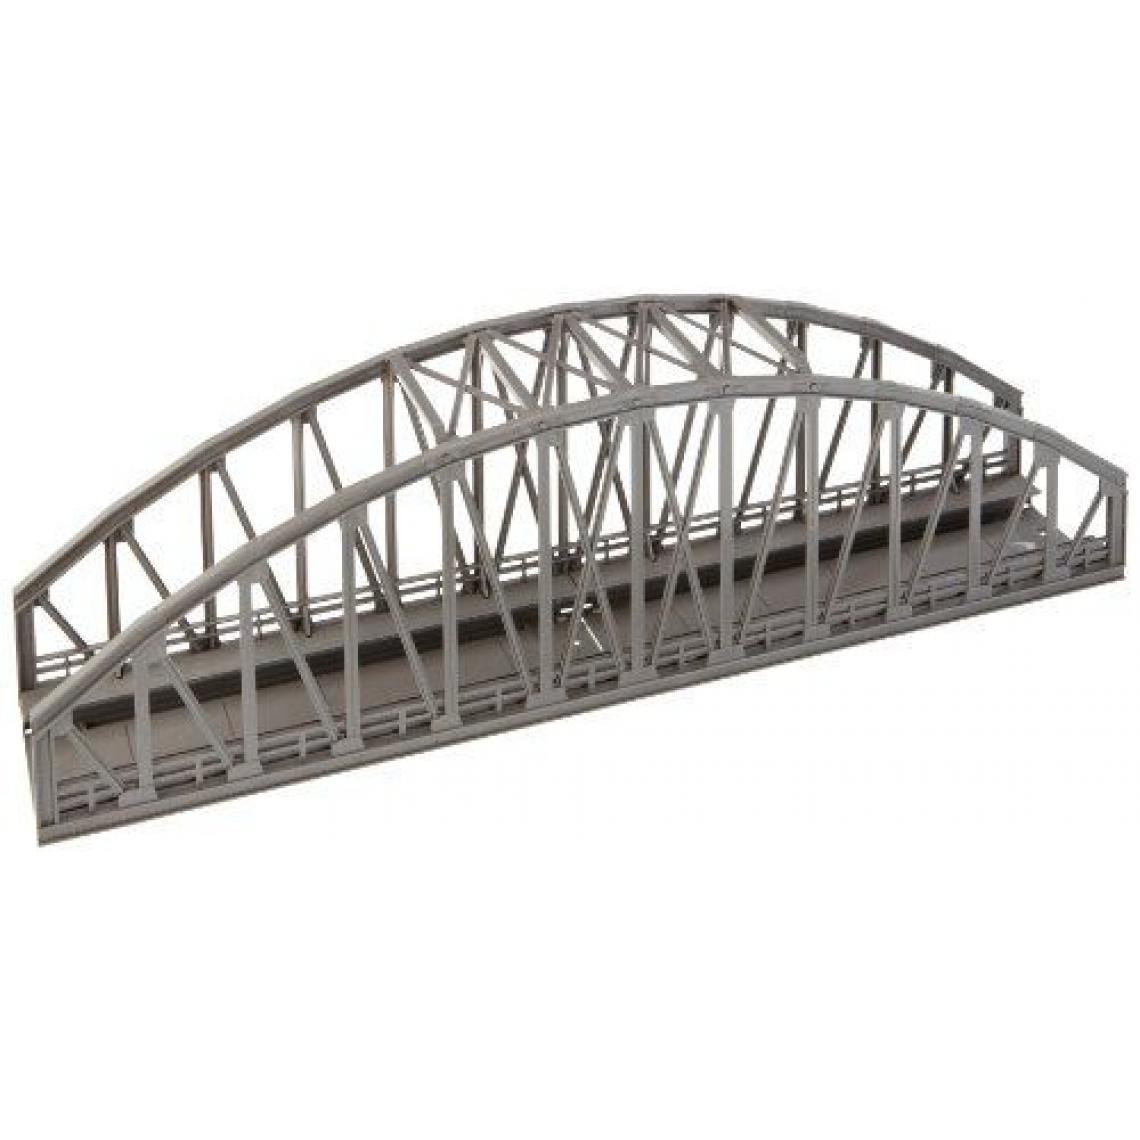 Inconnu - Märklin - 74636 - Modélisme Ferroviaire - Outil - Pont en Arc - 360 mm - Accessoires maquettes